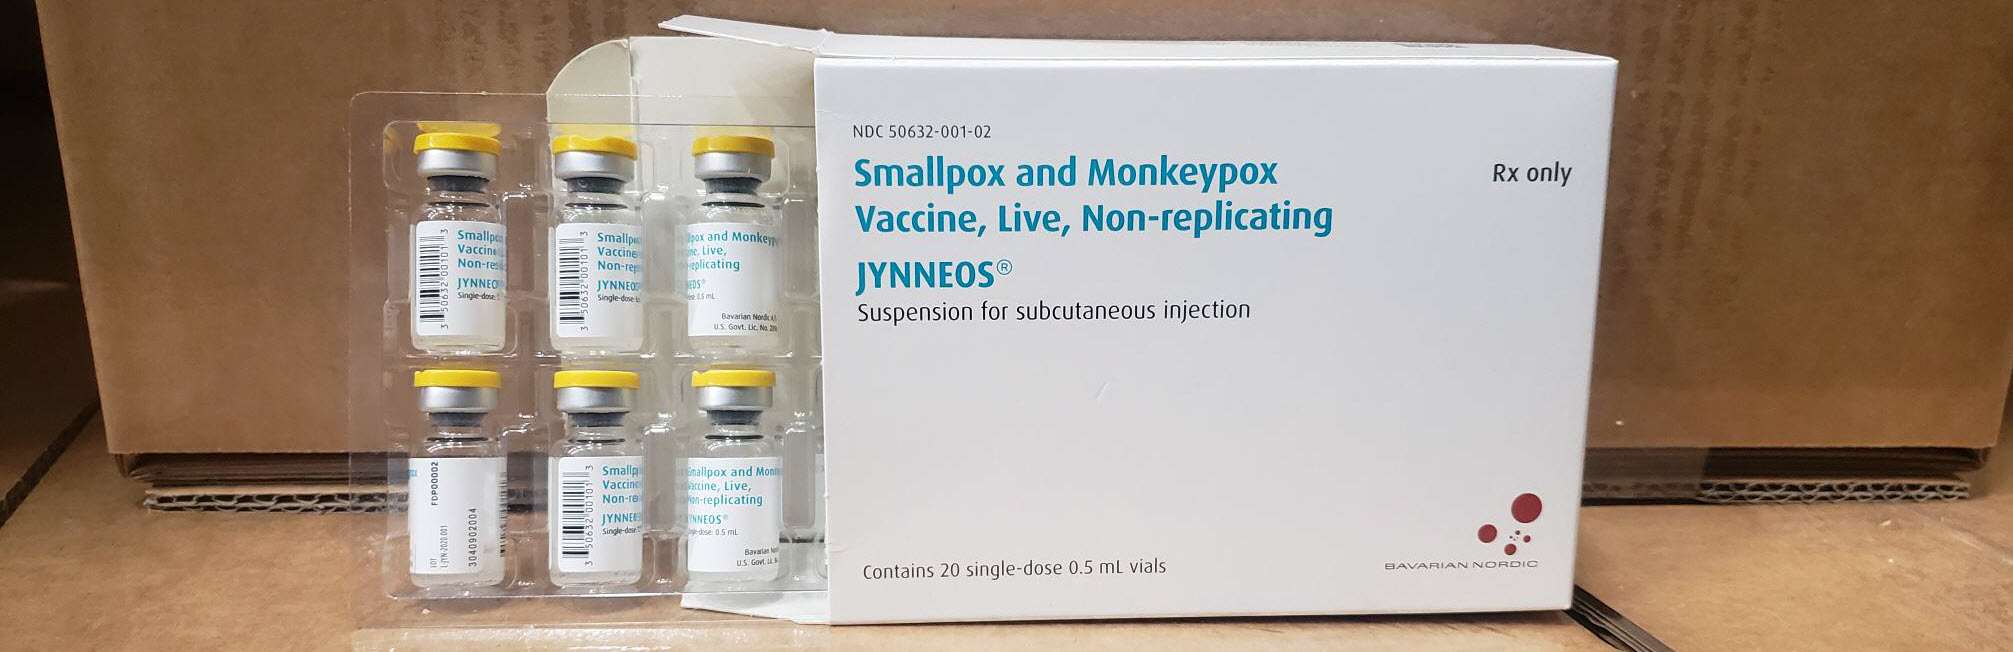 JYNNEOS vaccine packaging